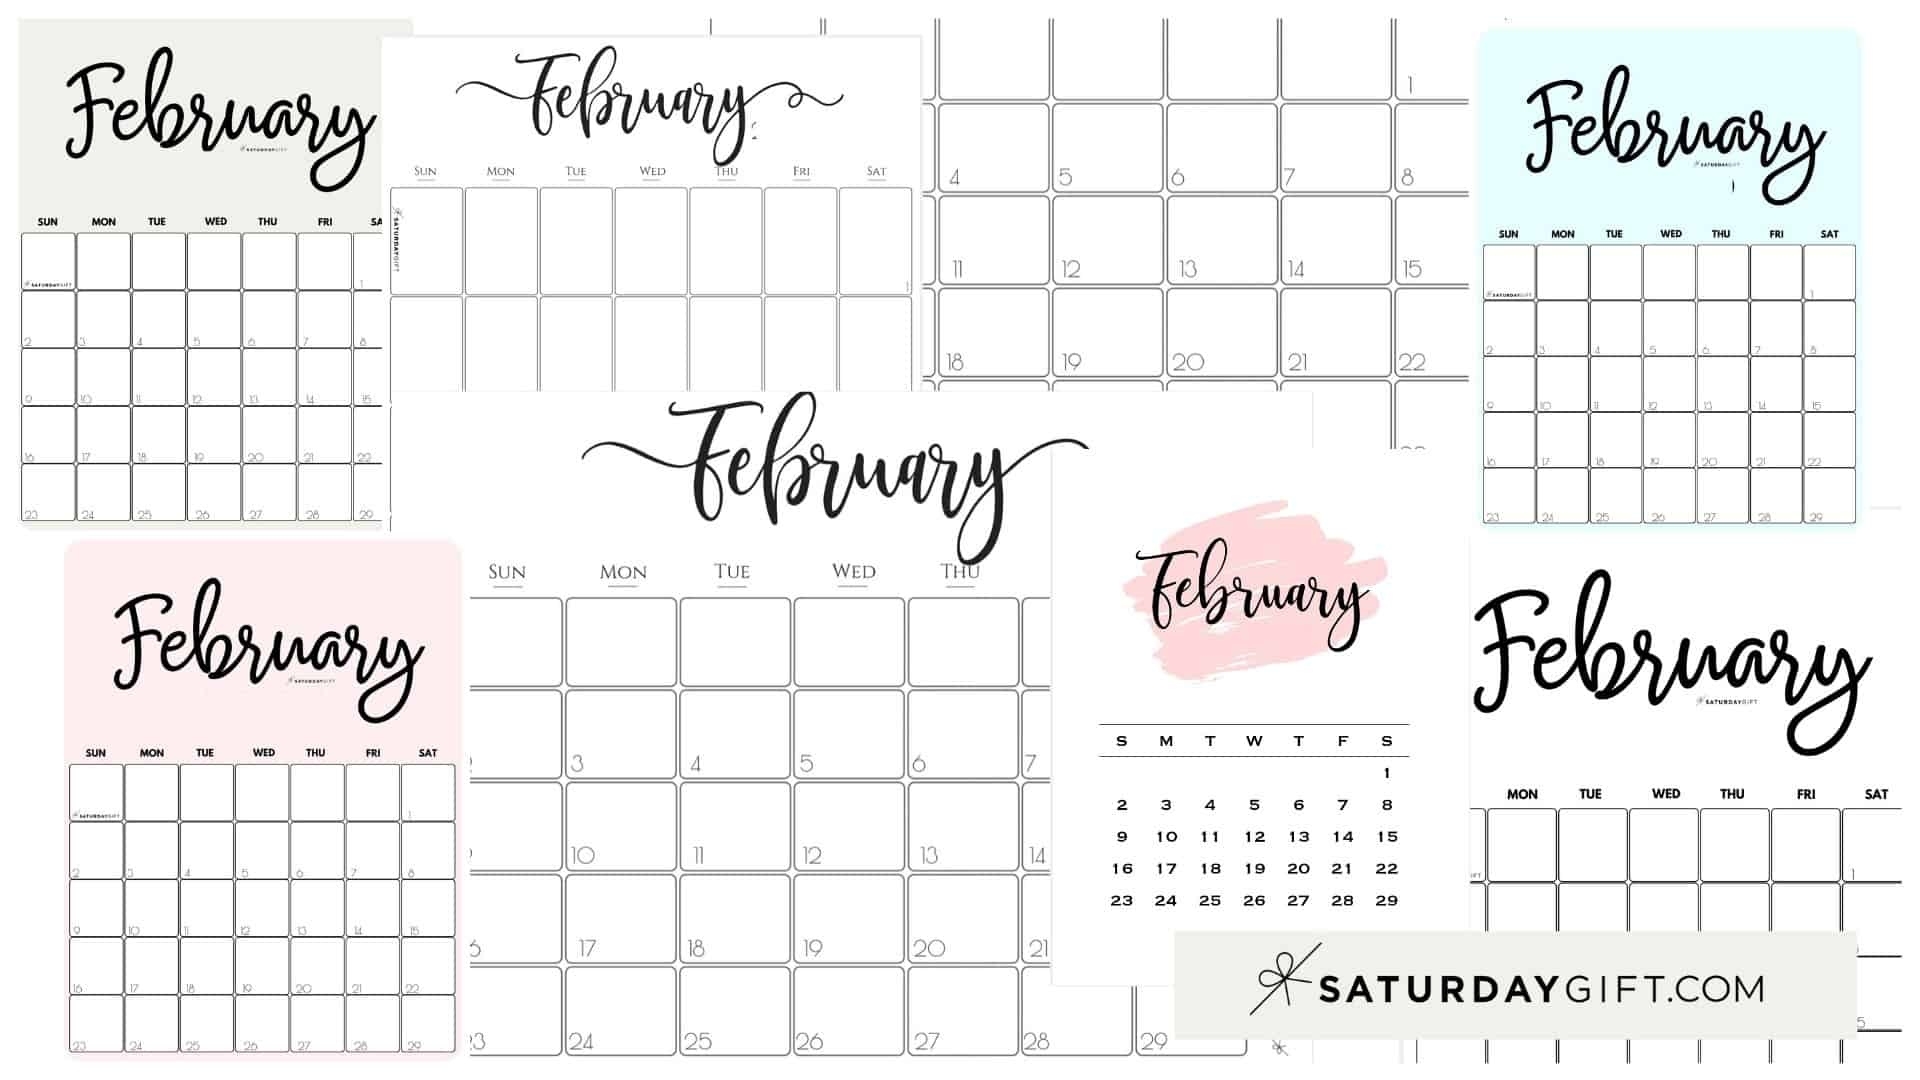 February 2021 Printable Calendar February To June 2021 Calendar